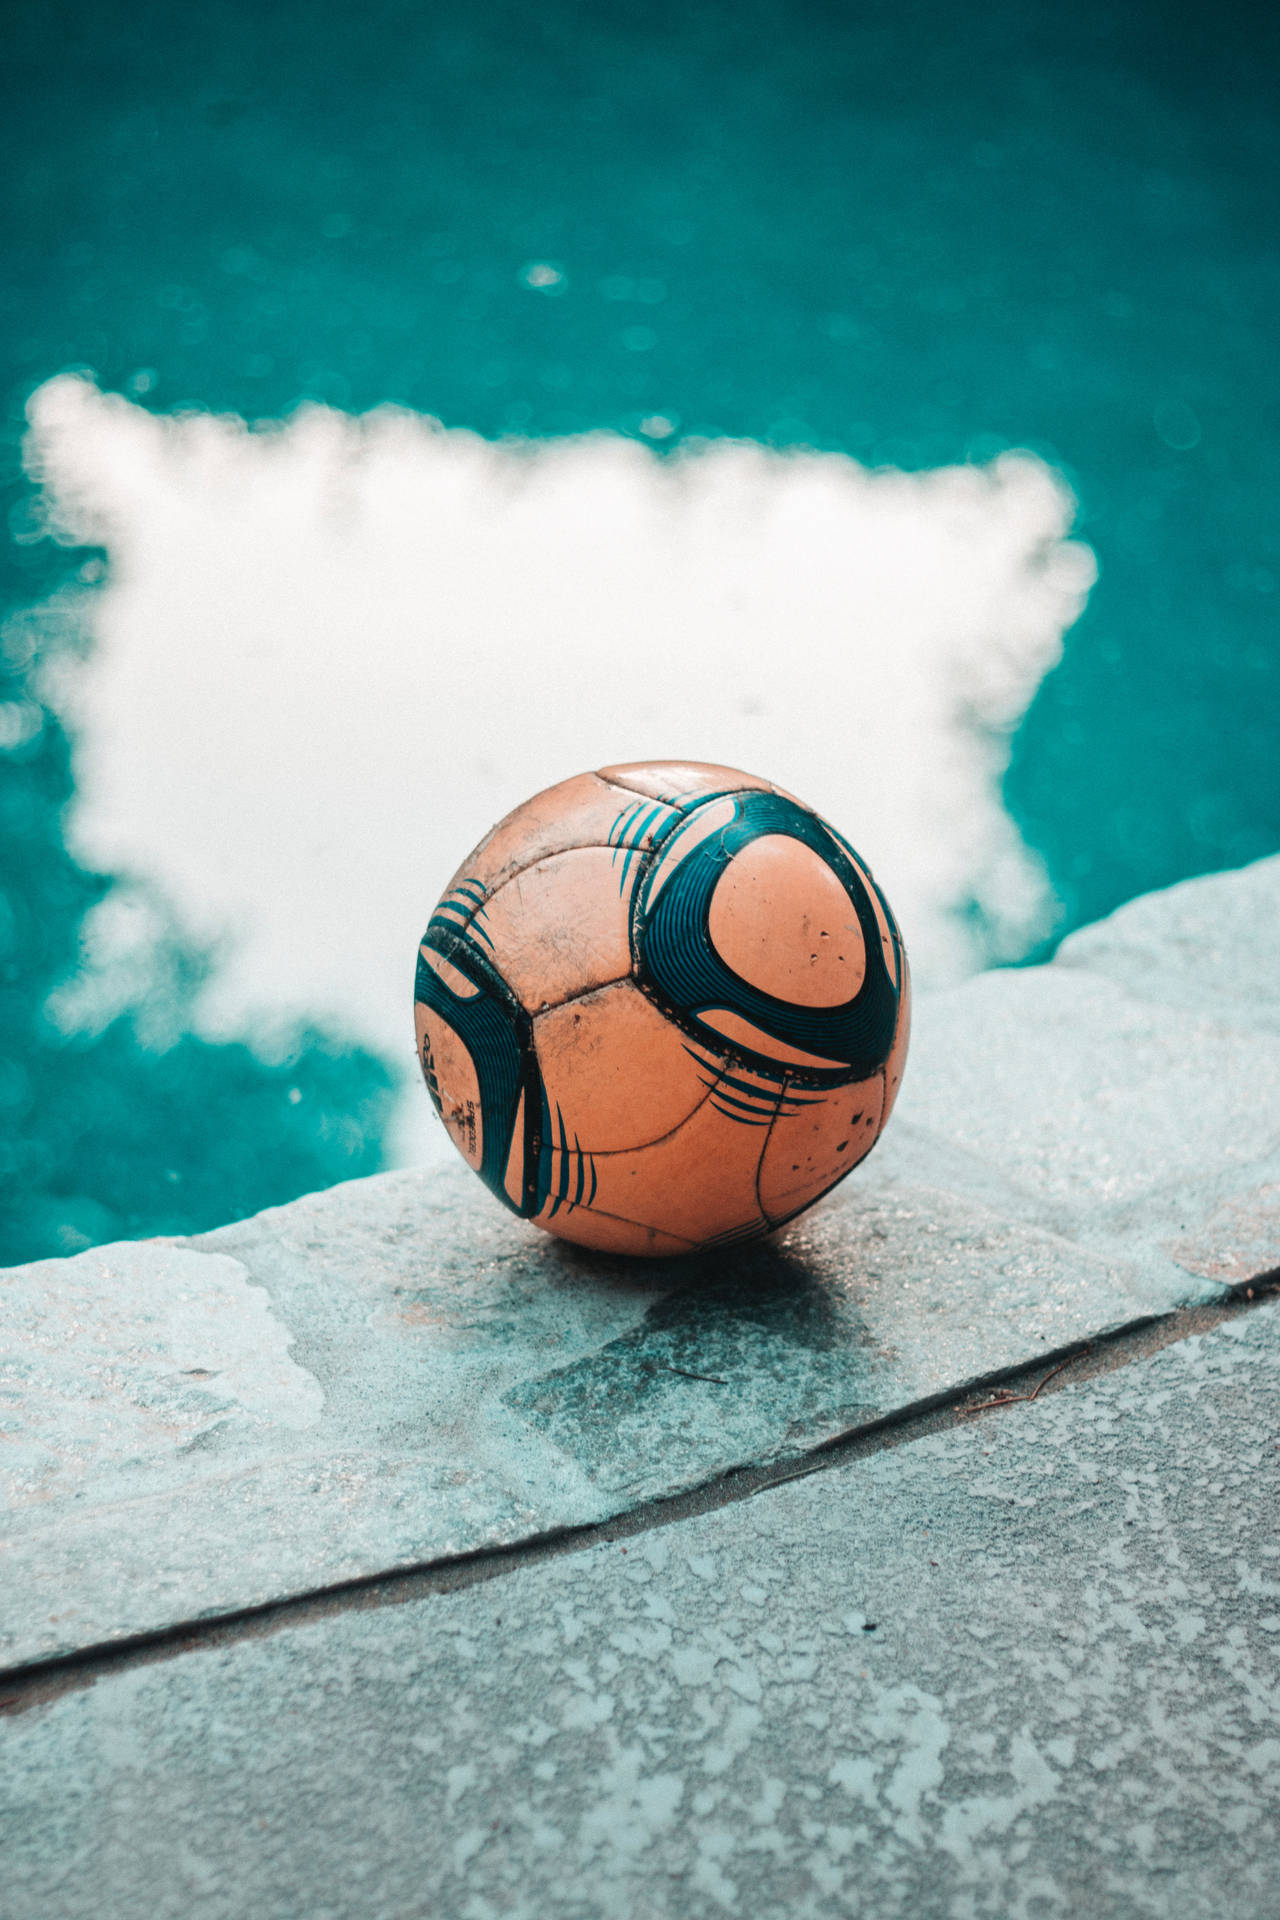 A rare design soccer ball allowing creative play Wallpaper